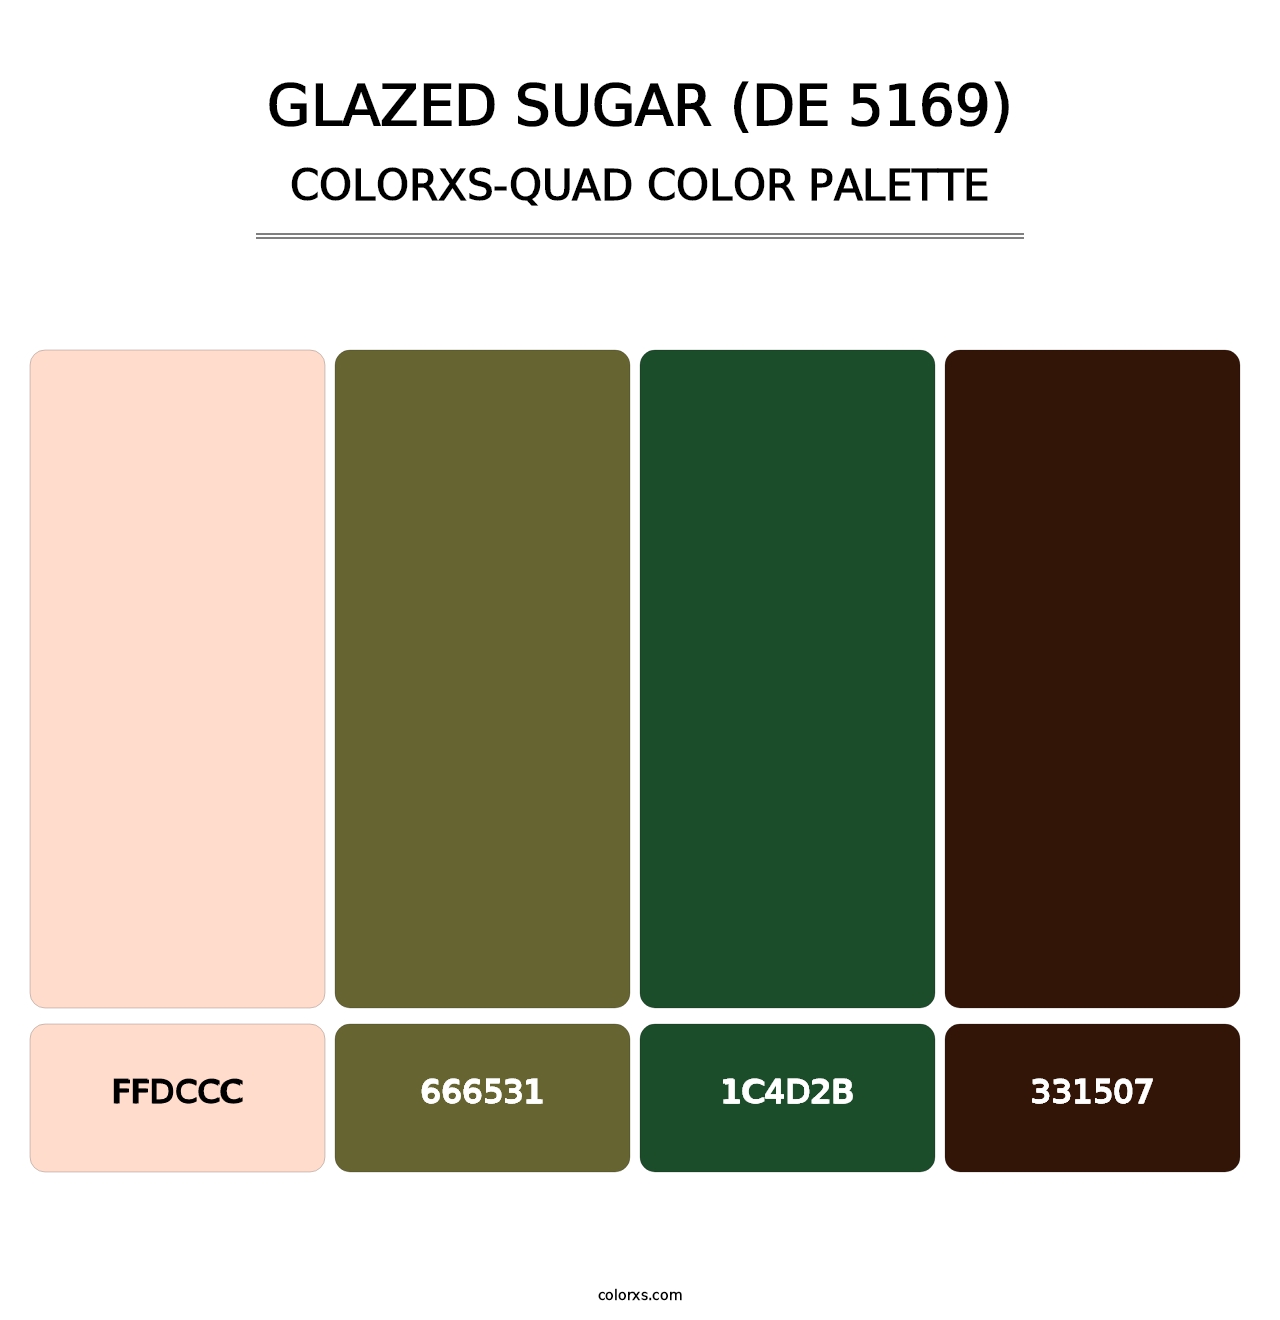 Glazed Sugar (DE 5169) - Colorxs Quad Palette